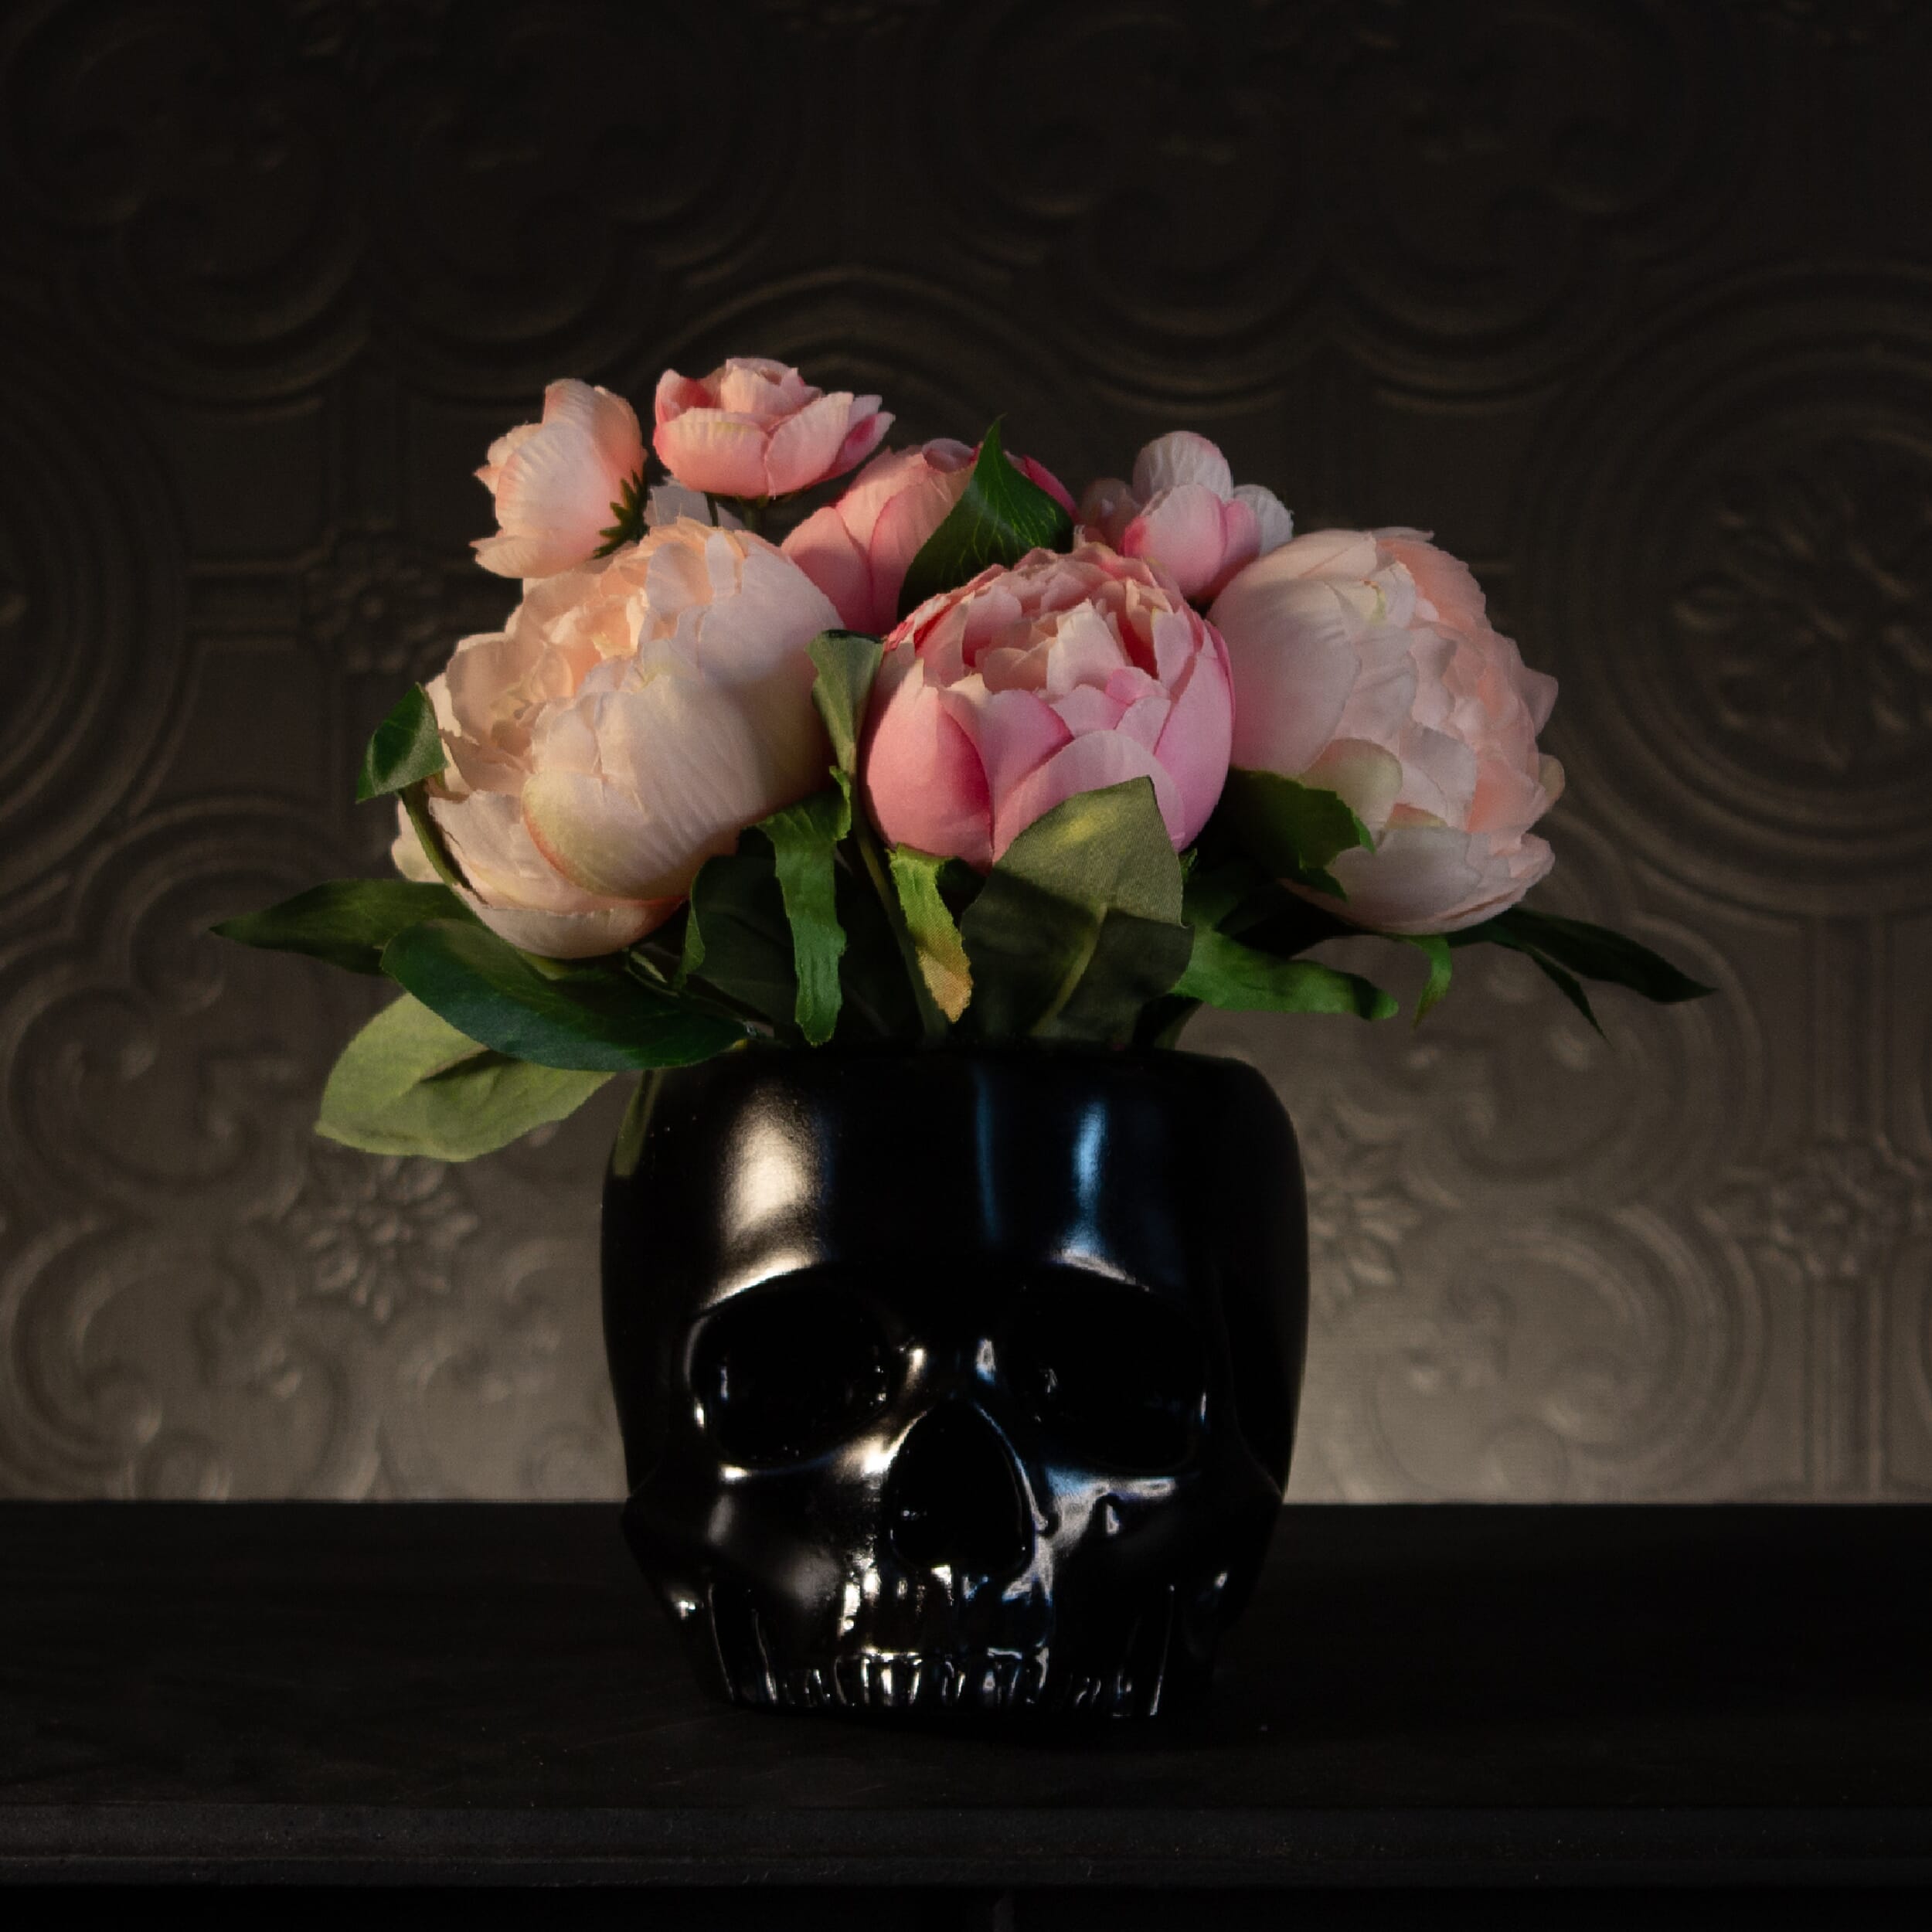 Antoinette Flowerhead - Blush Pink Peonies & Ranunculus